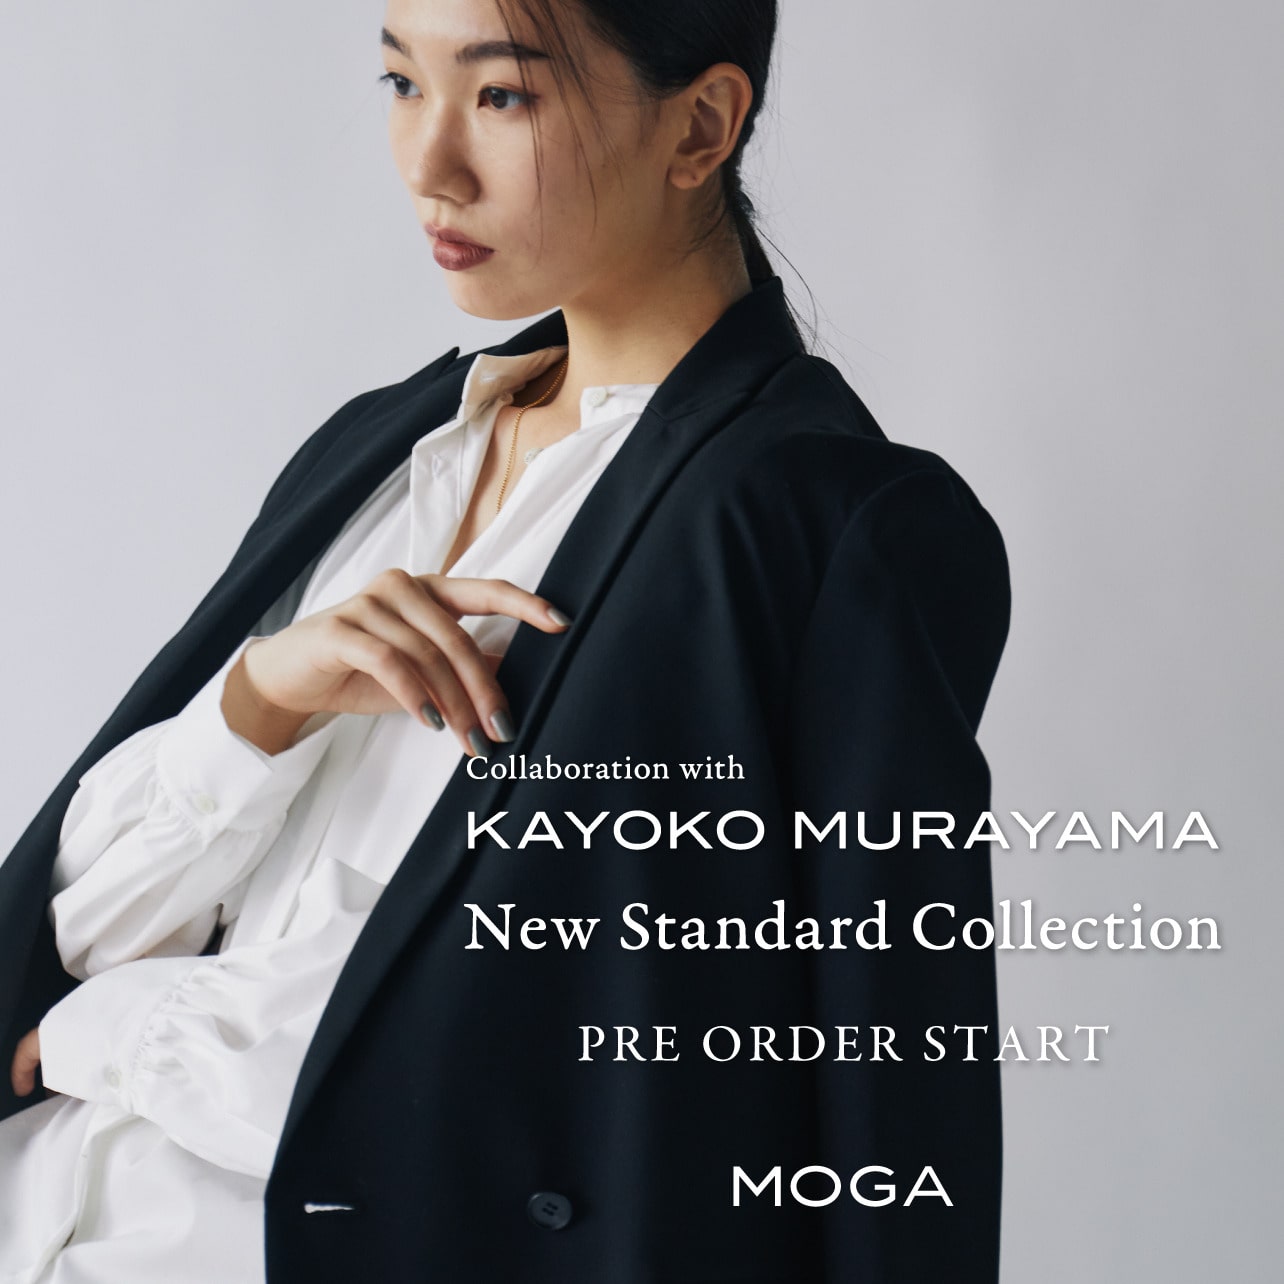 Collaboration with KAYOKO MURAYAMA